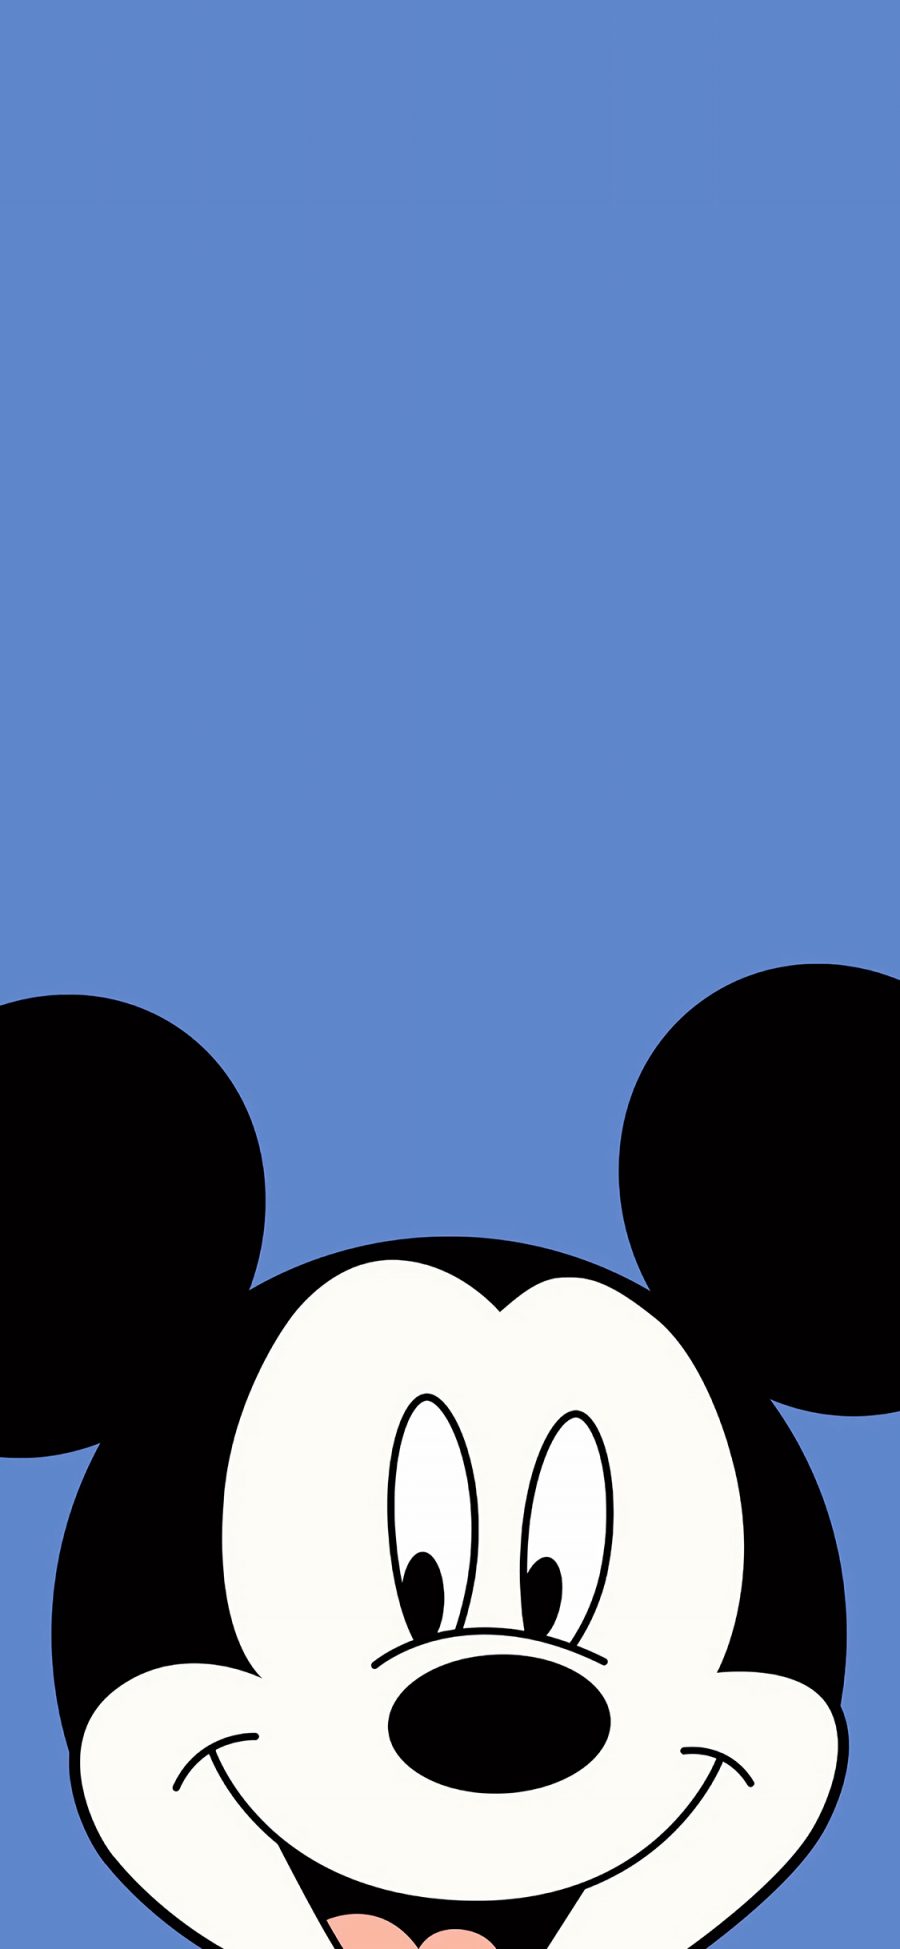 [2436×1125]迪士尼 米奇 卡通 蓝 苹果手机动漫壁纸图片